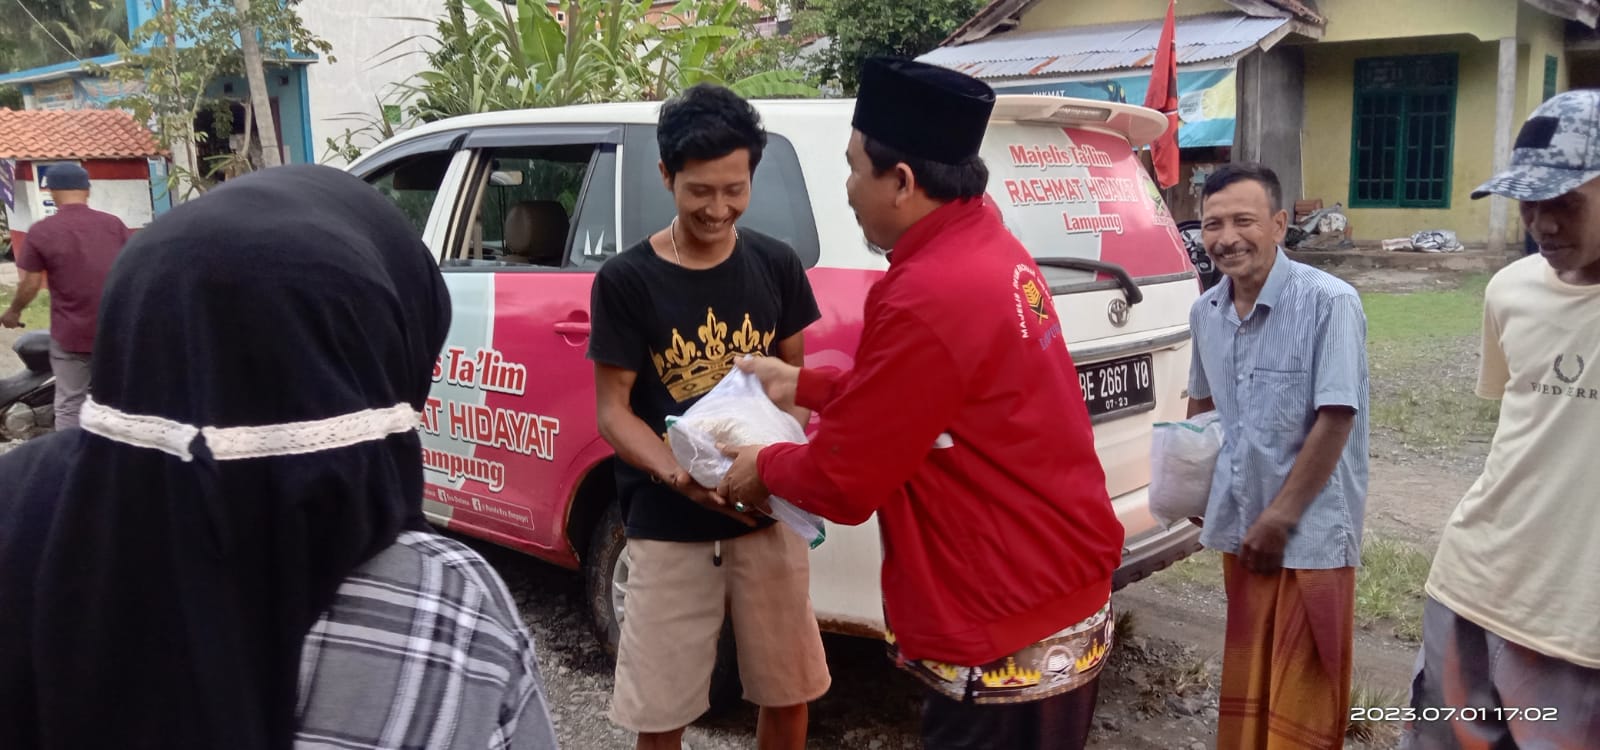 MT Rachmat Hidayat Lampung Bagikan Sembako ke Korban Banjir Tanggamus